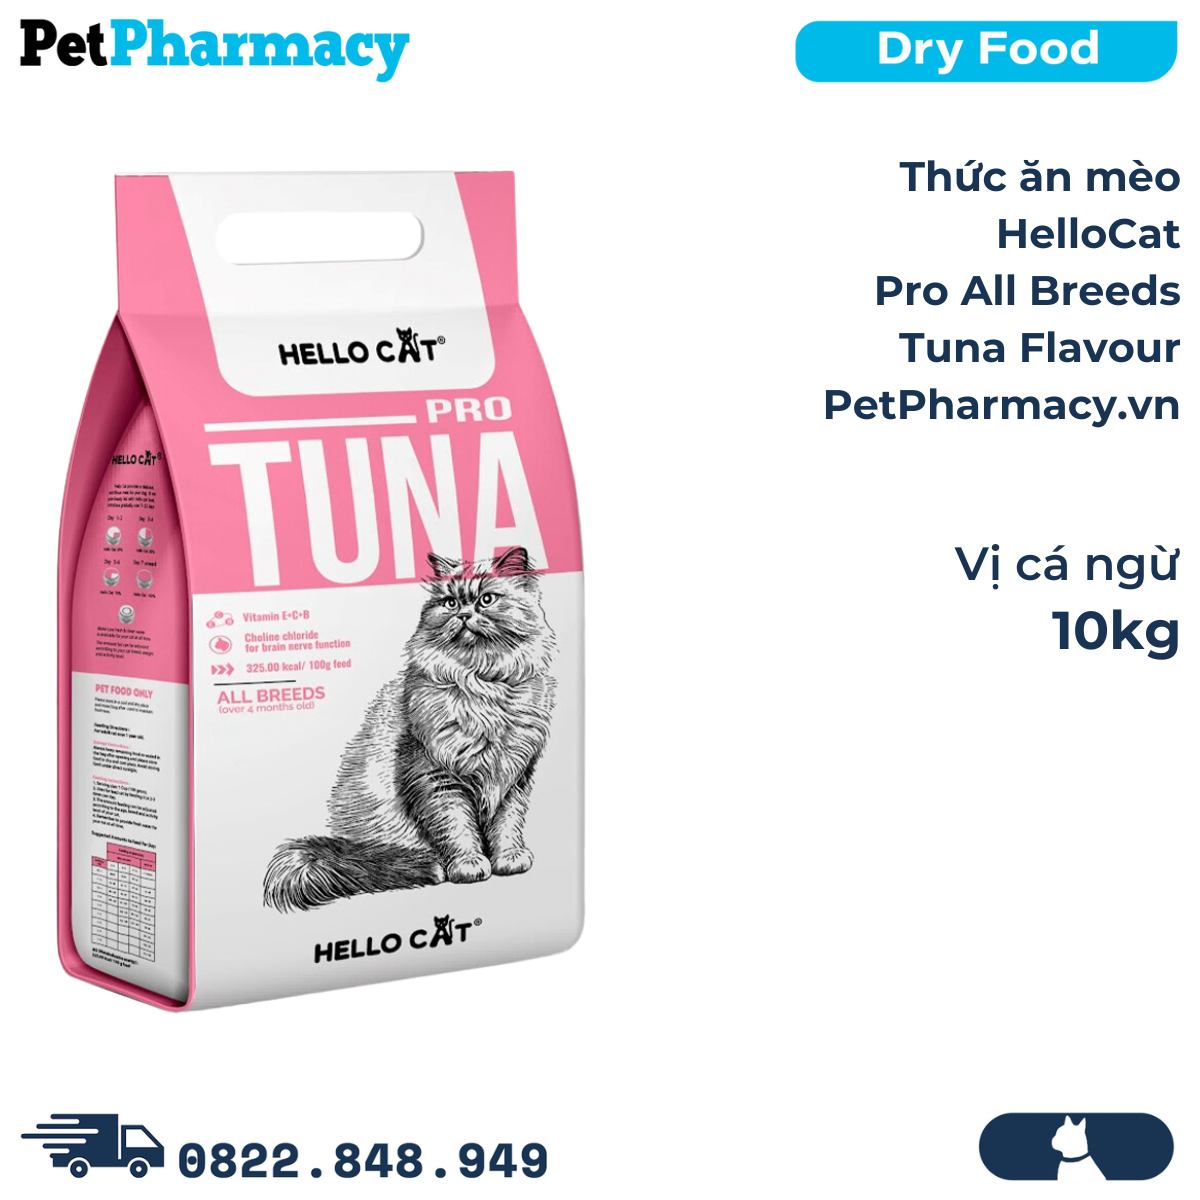  Thức ăn mèo HelloCat Pro All Breeds Tuna Flavour 10kg - Vị cá ngừ 